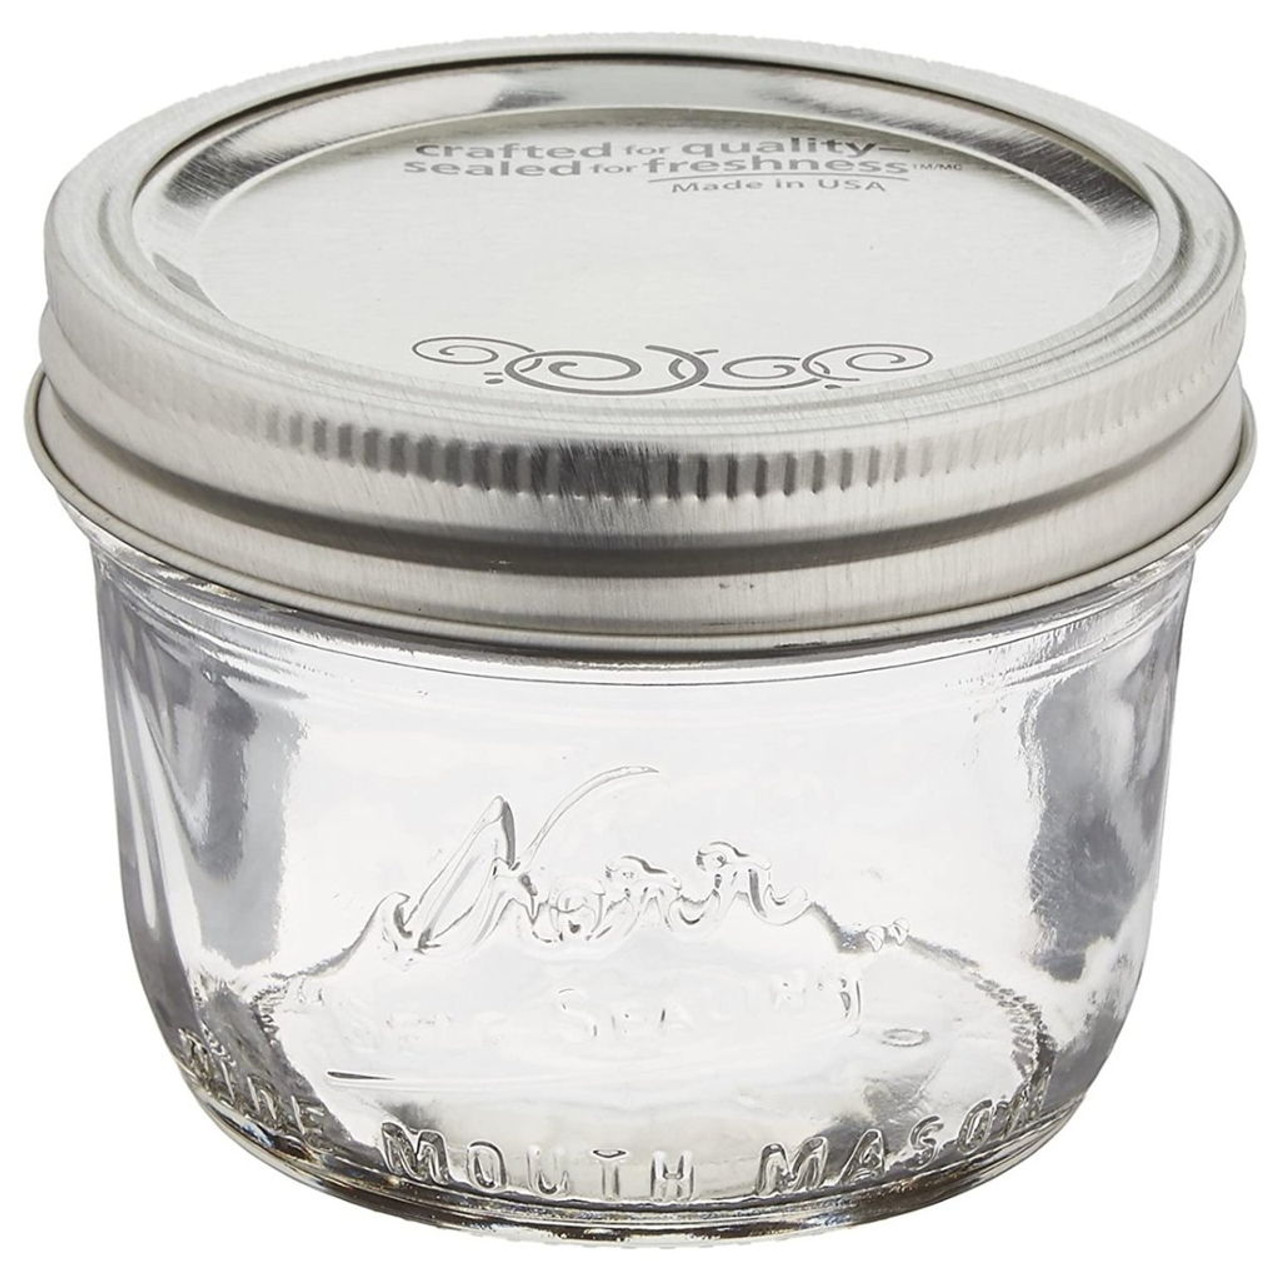 Ball Mason Jars, Wide Mouth, Pint - 12 jars